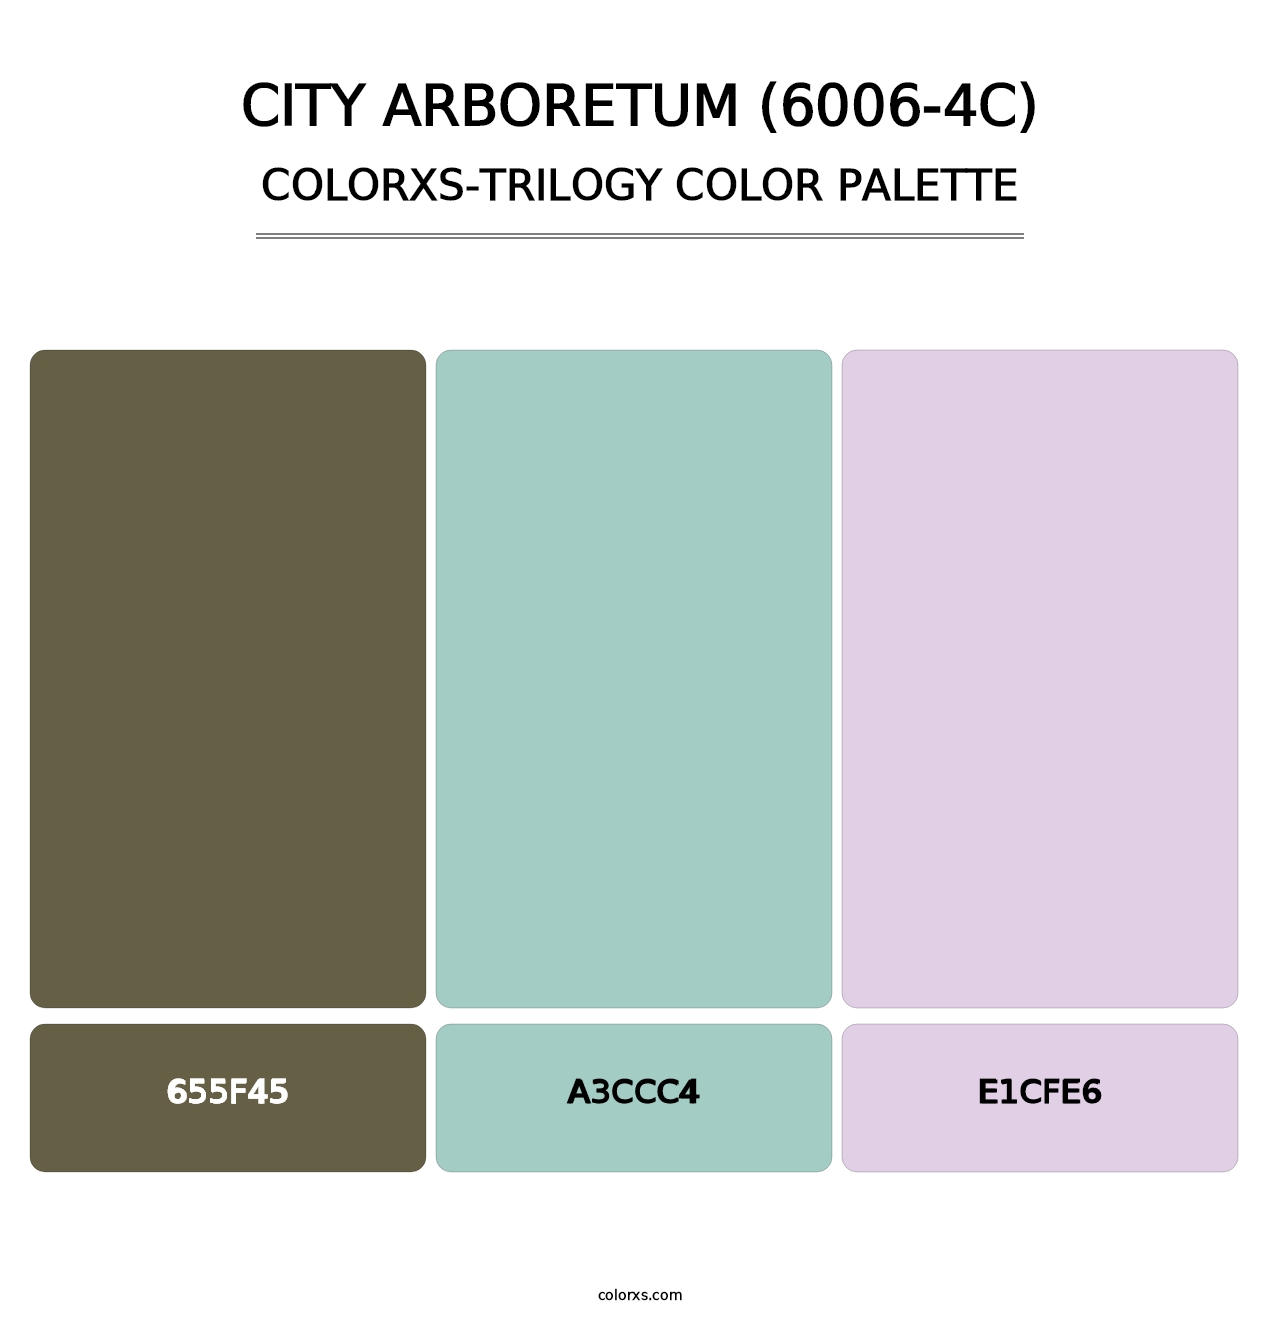 City Arboretum (6006-4C) - Colorxs Trilogy Palette